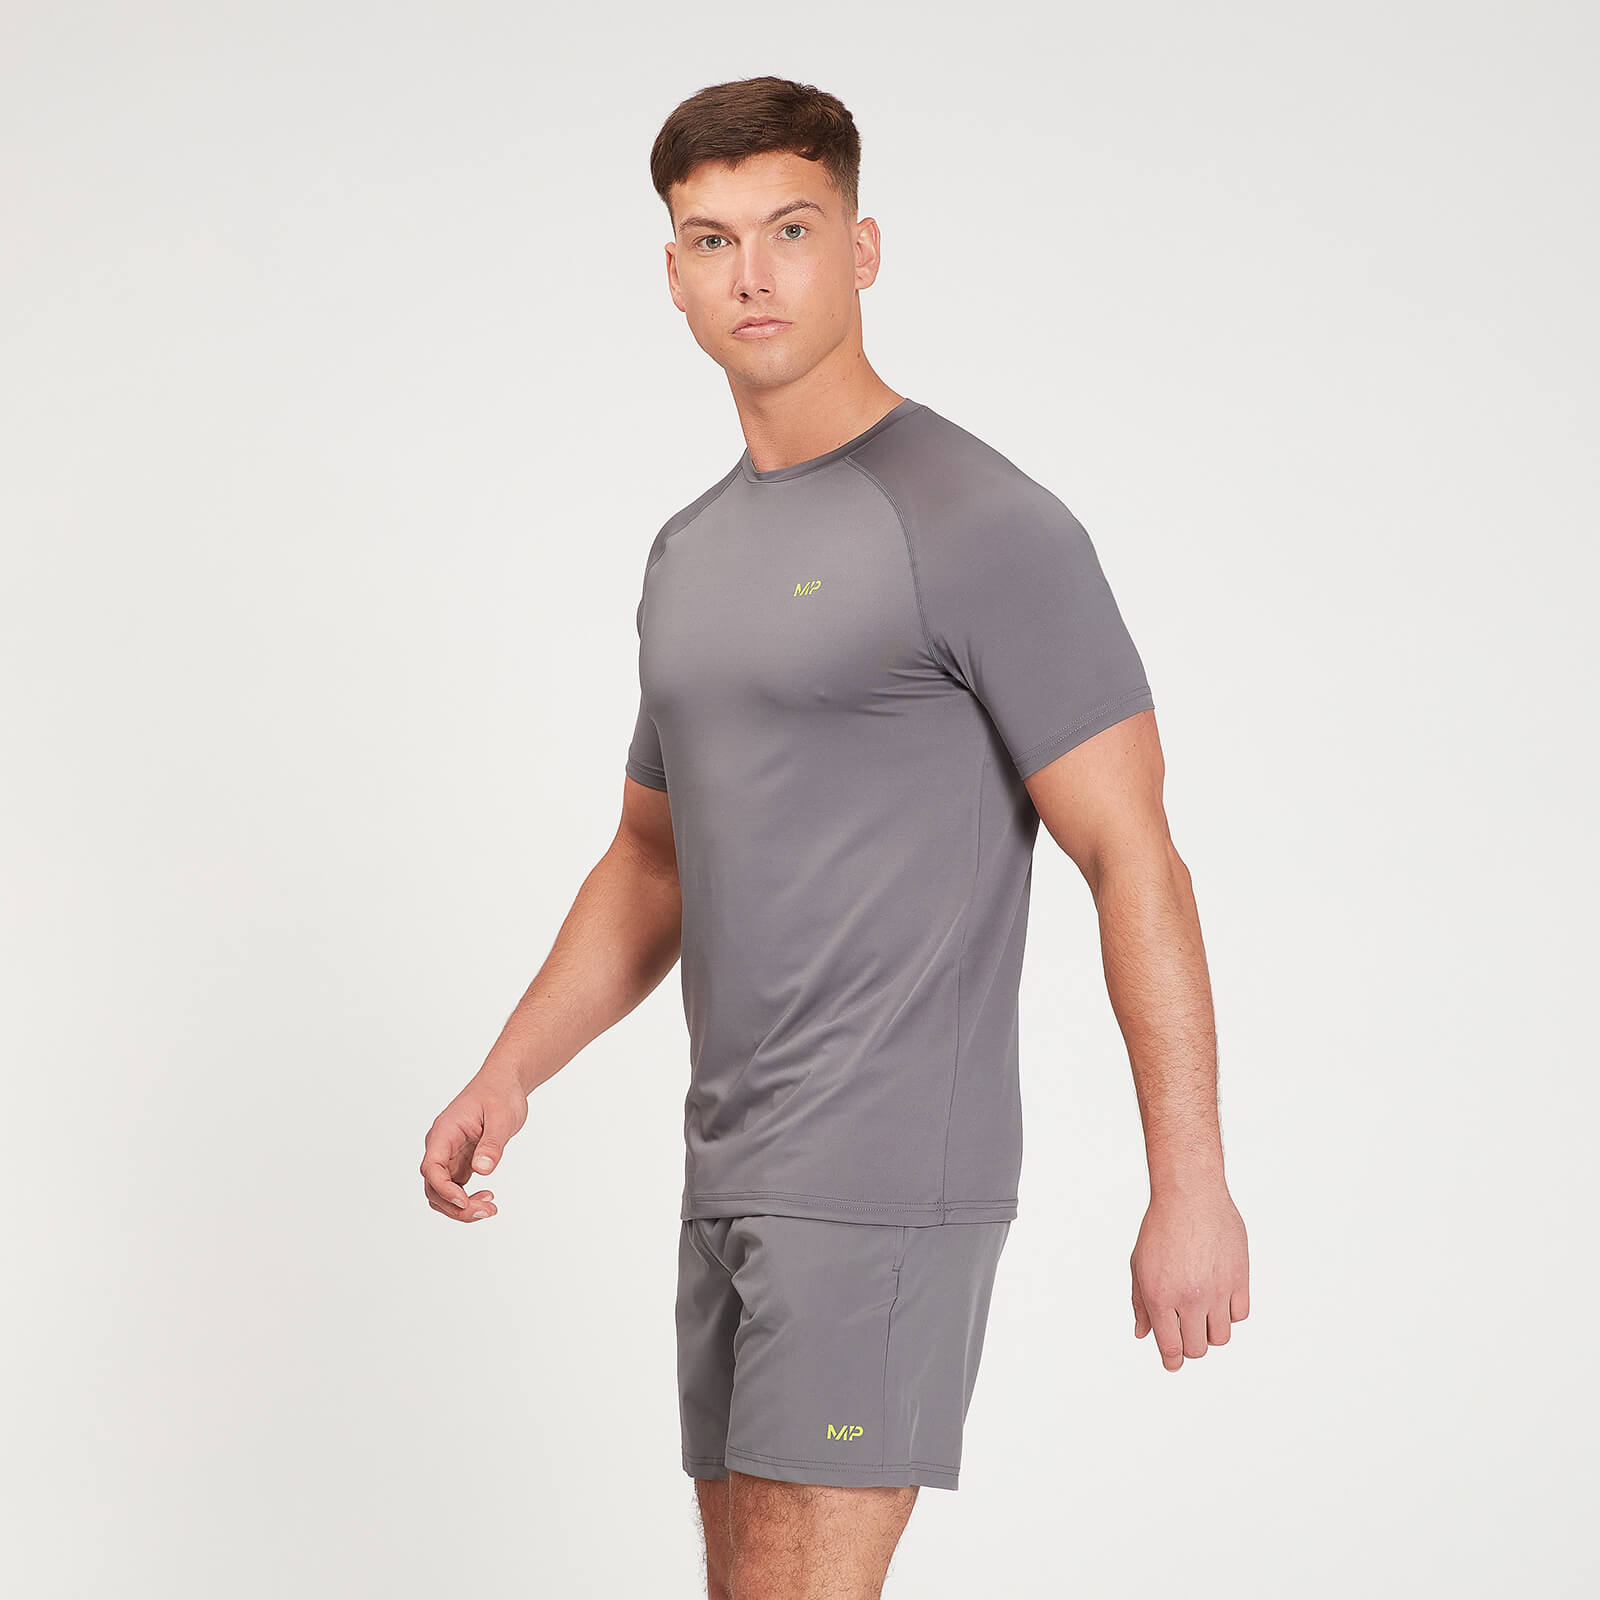 Купить MP Men's Graphic Running Short Sleeve T-Shirt - Carbon - XXS, Myprotein International